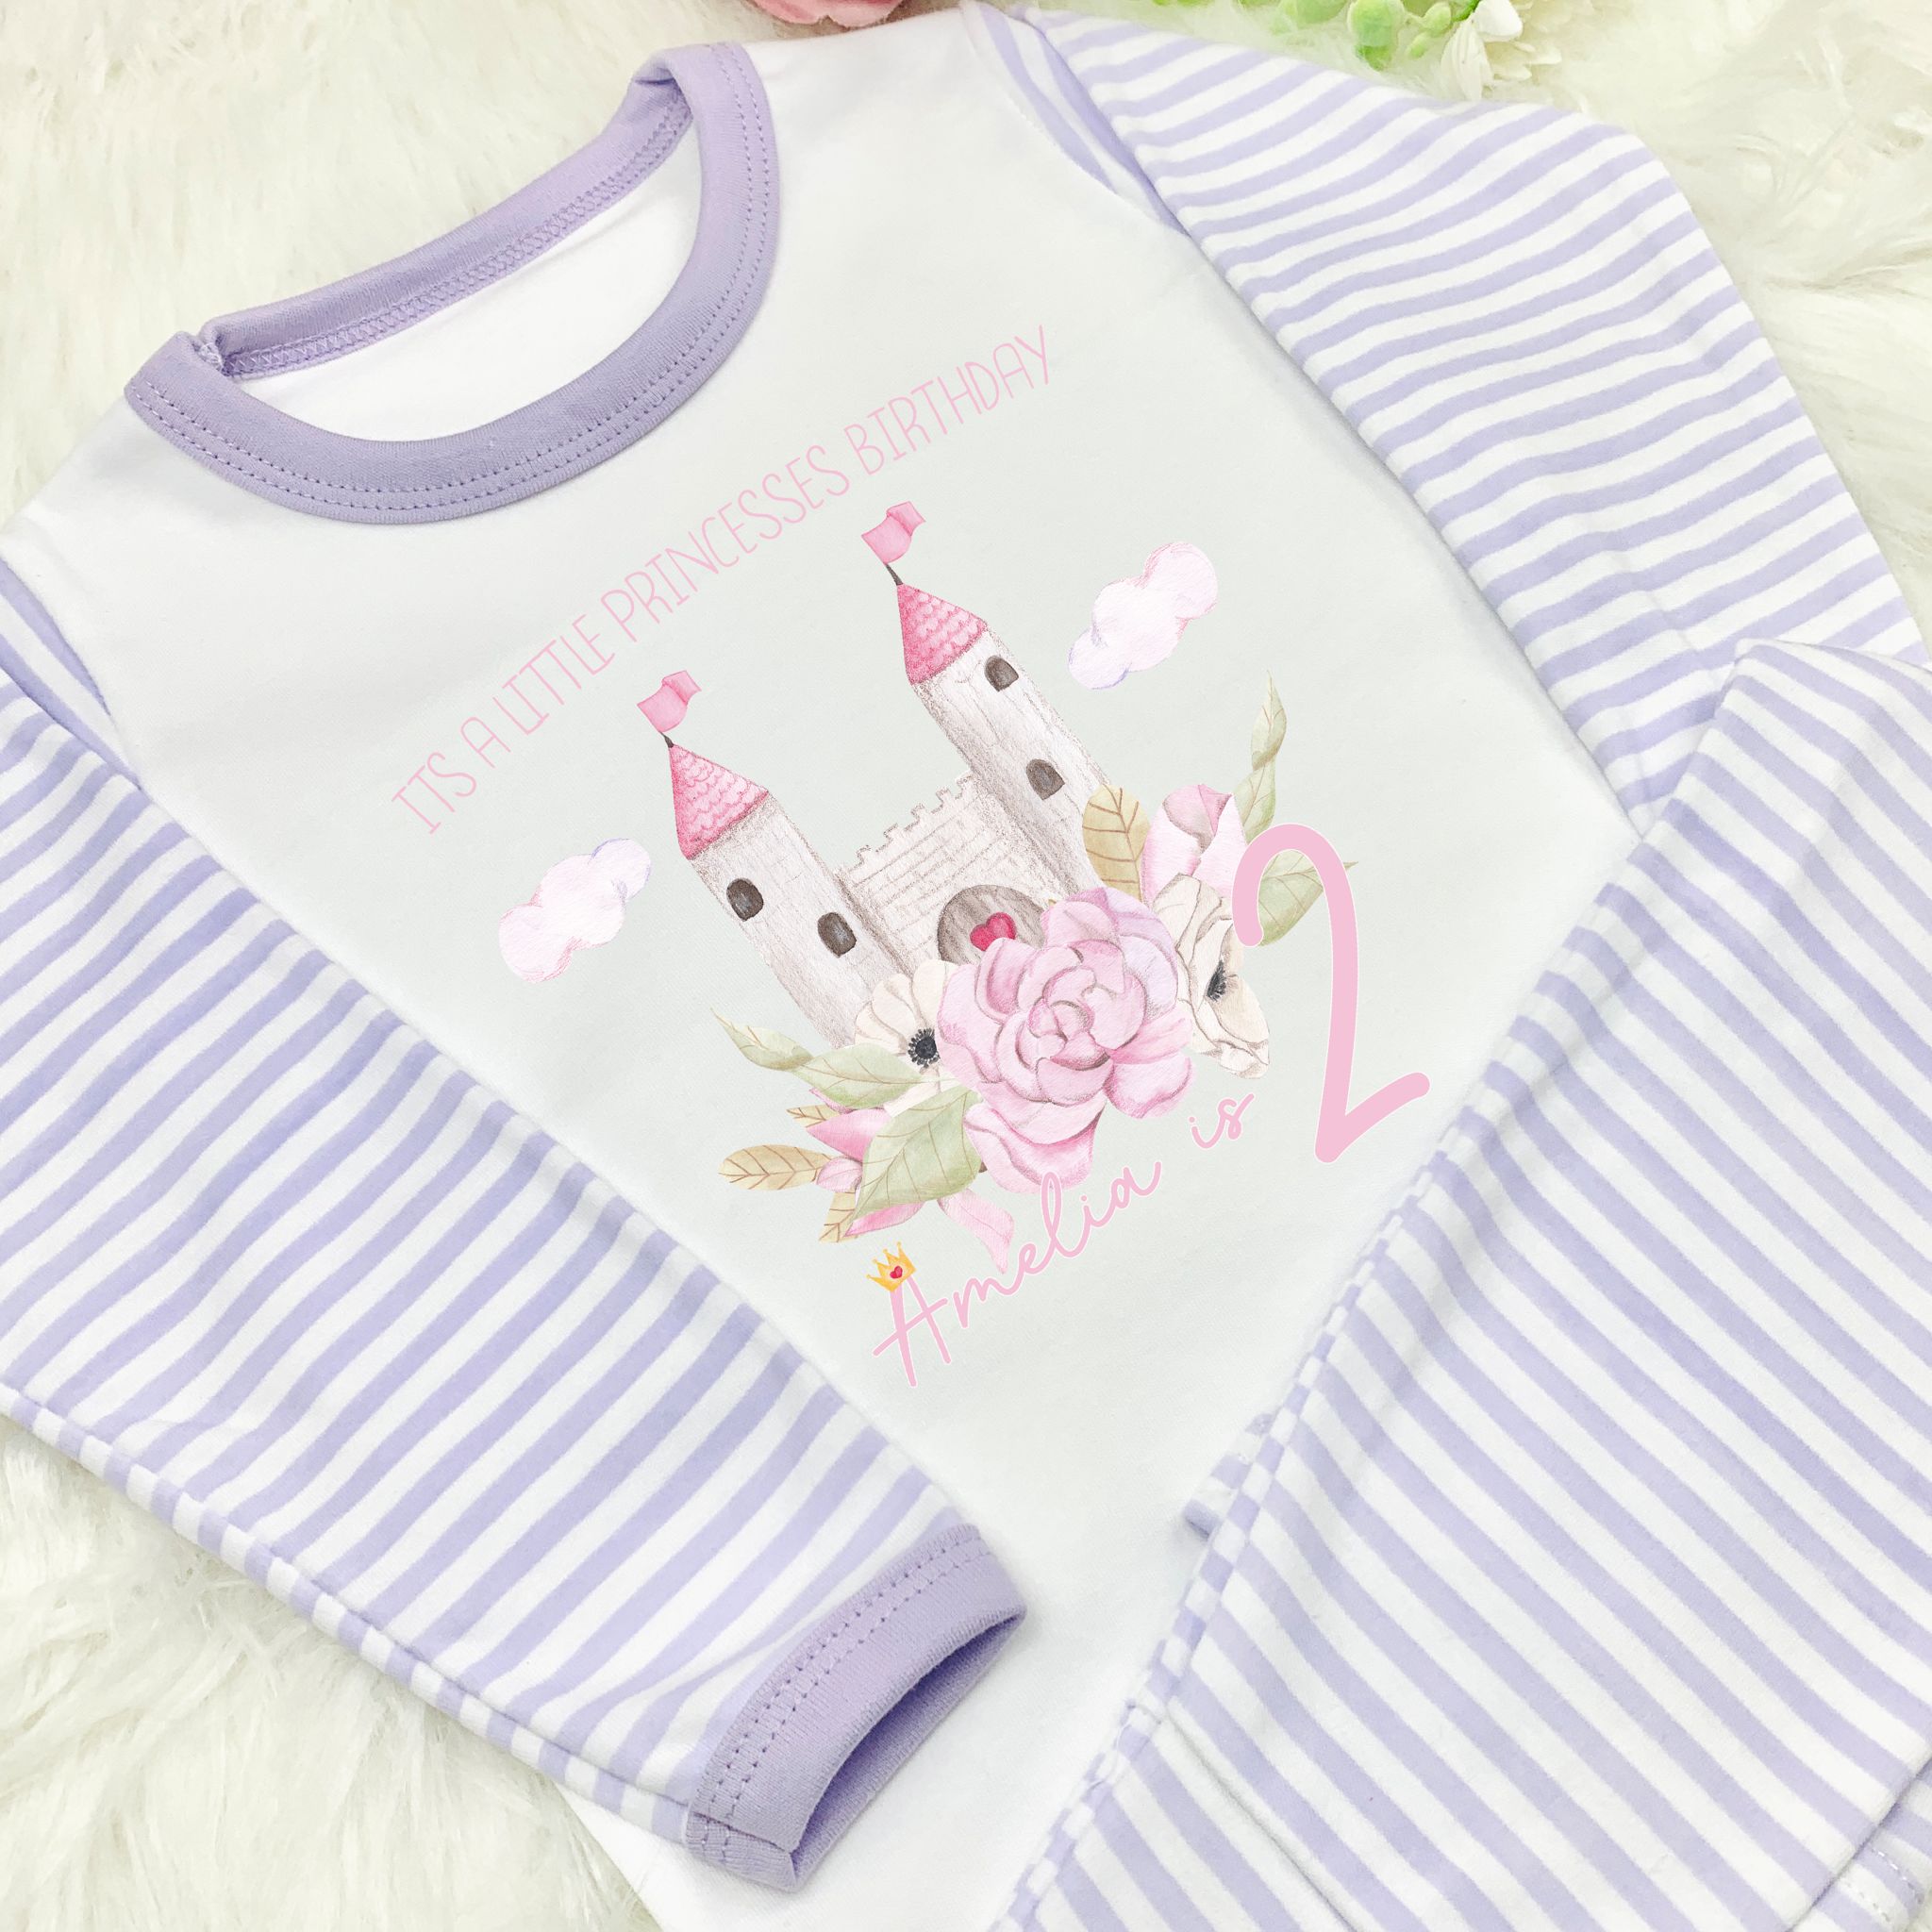 Personalised Birthday Pyjamas -  Princess Castle Design